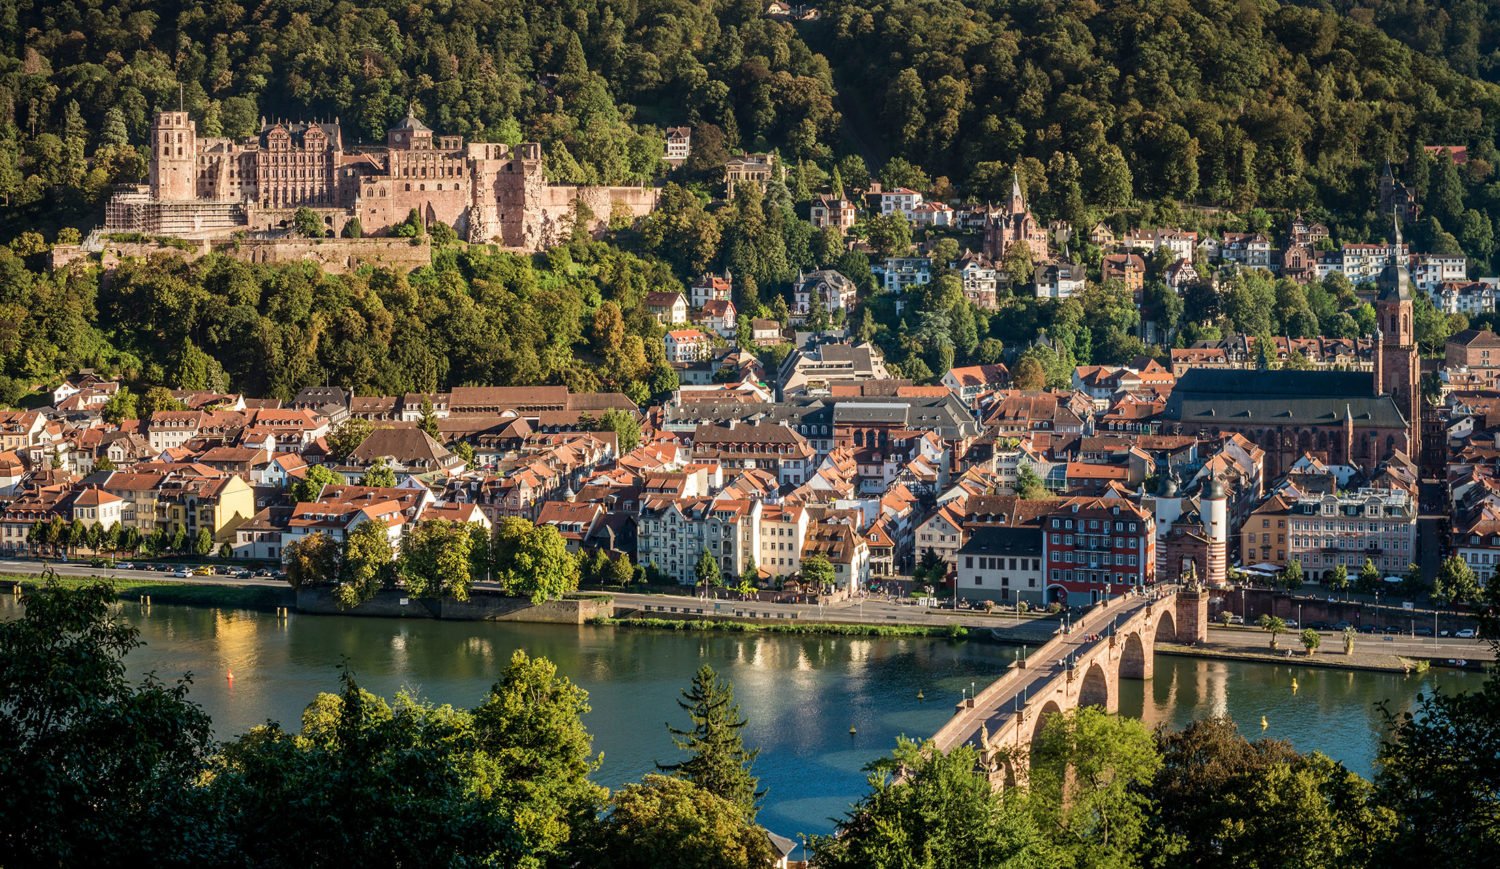 View of Heidelberg, including castle ruins and Neckar river